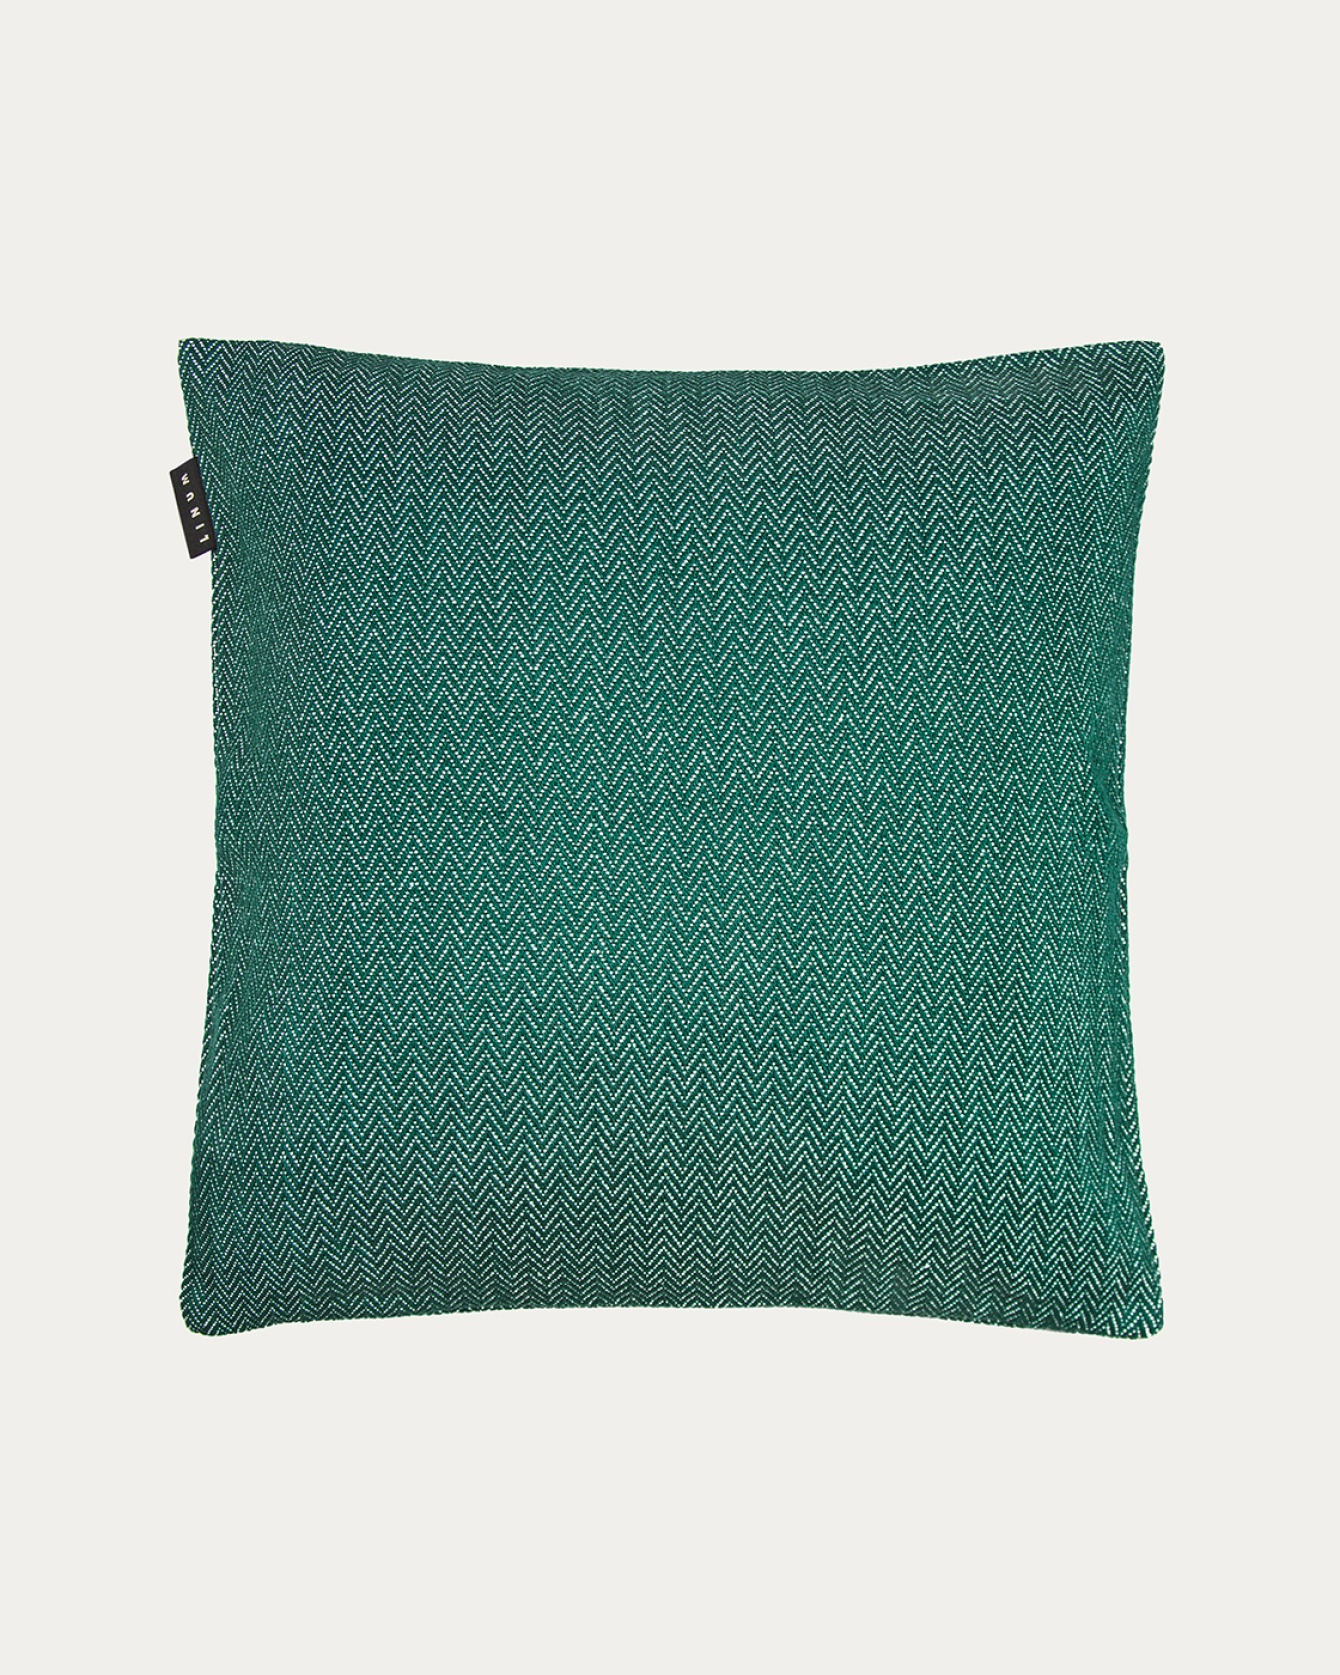 Produktbild tief smaragdgrün SHEPARD Kissenhülle aus weicher Baumwolle mit dezentem Fischgrätmuster von LINUM DESIGN. Größe 50x50 cm.